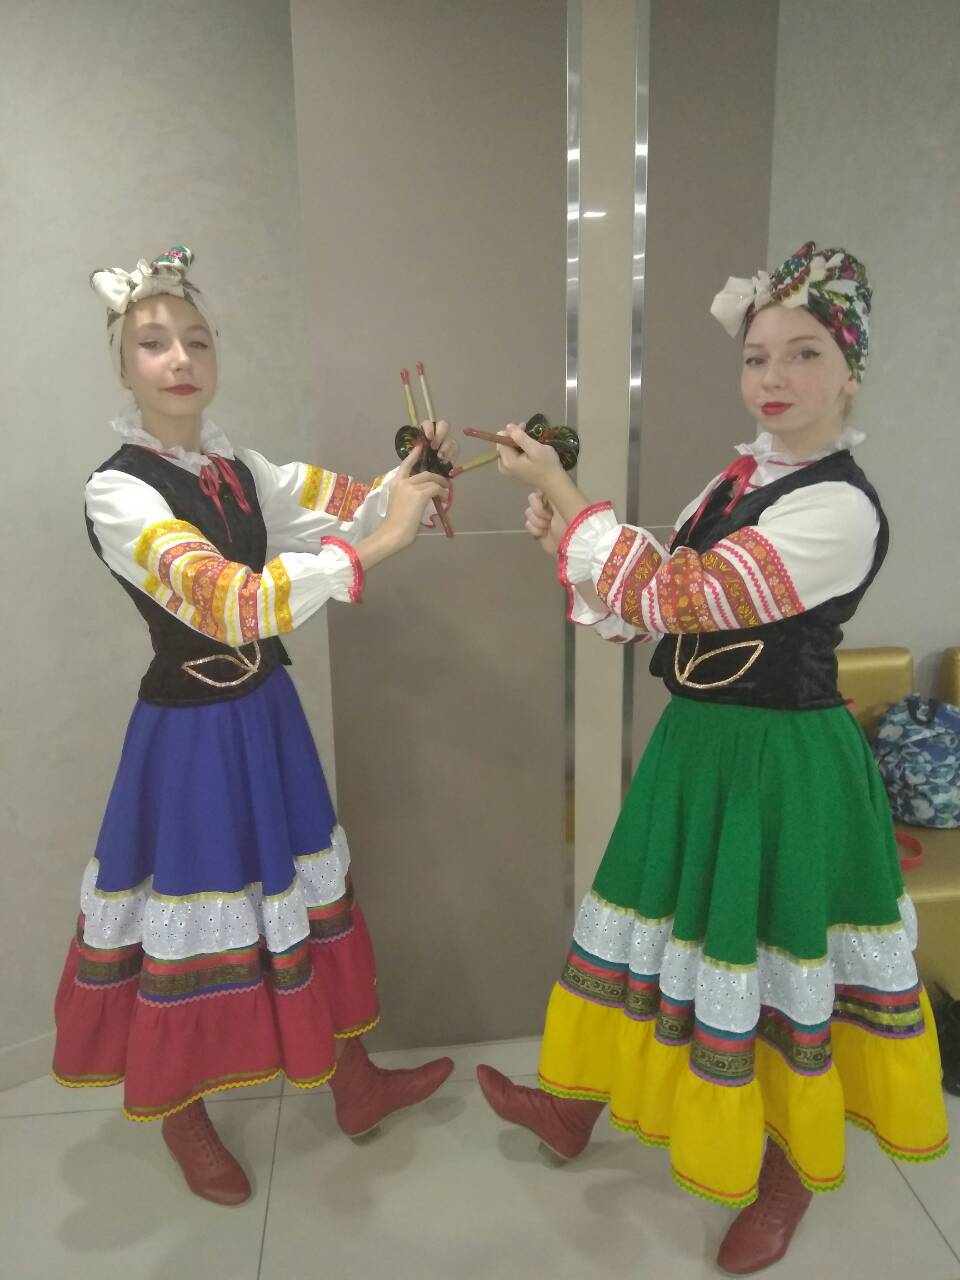 2 ноября учащиеся хореографического отделения школы слали лауреатами в Международном фестивале-конкурсе "Седьмой континент"